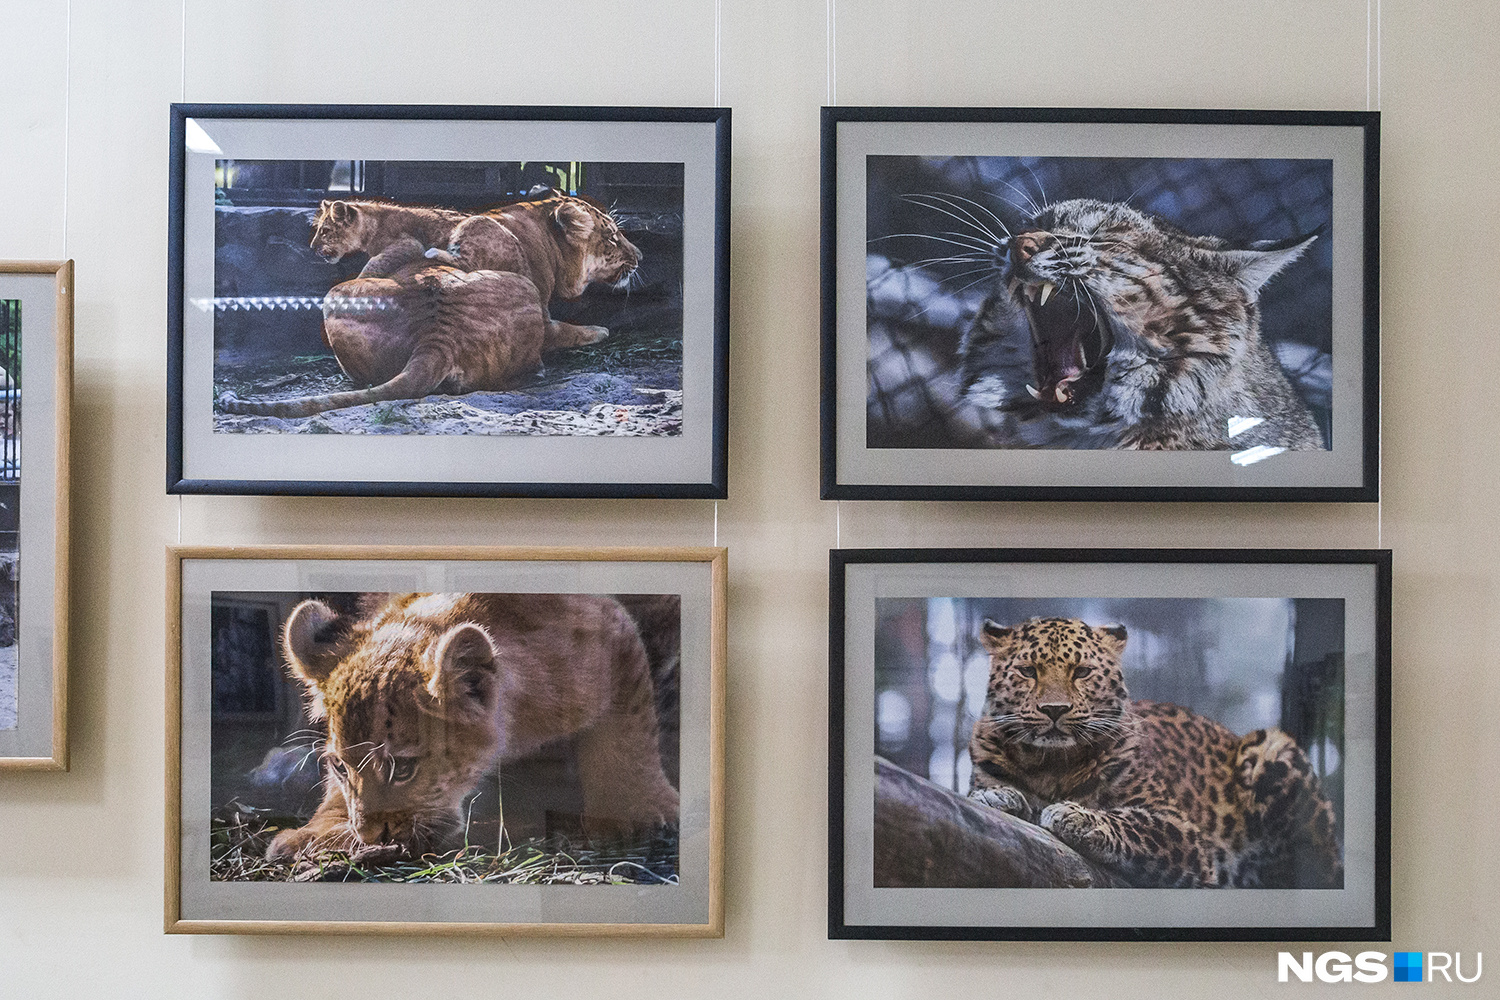 Игорь Шадрин фотографирует не только представителей семейства кошачьих, но и других животных